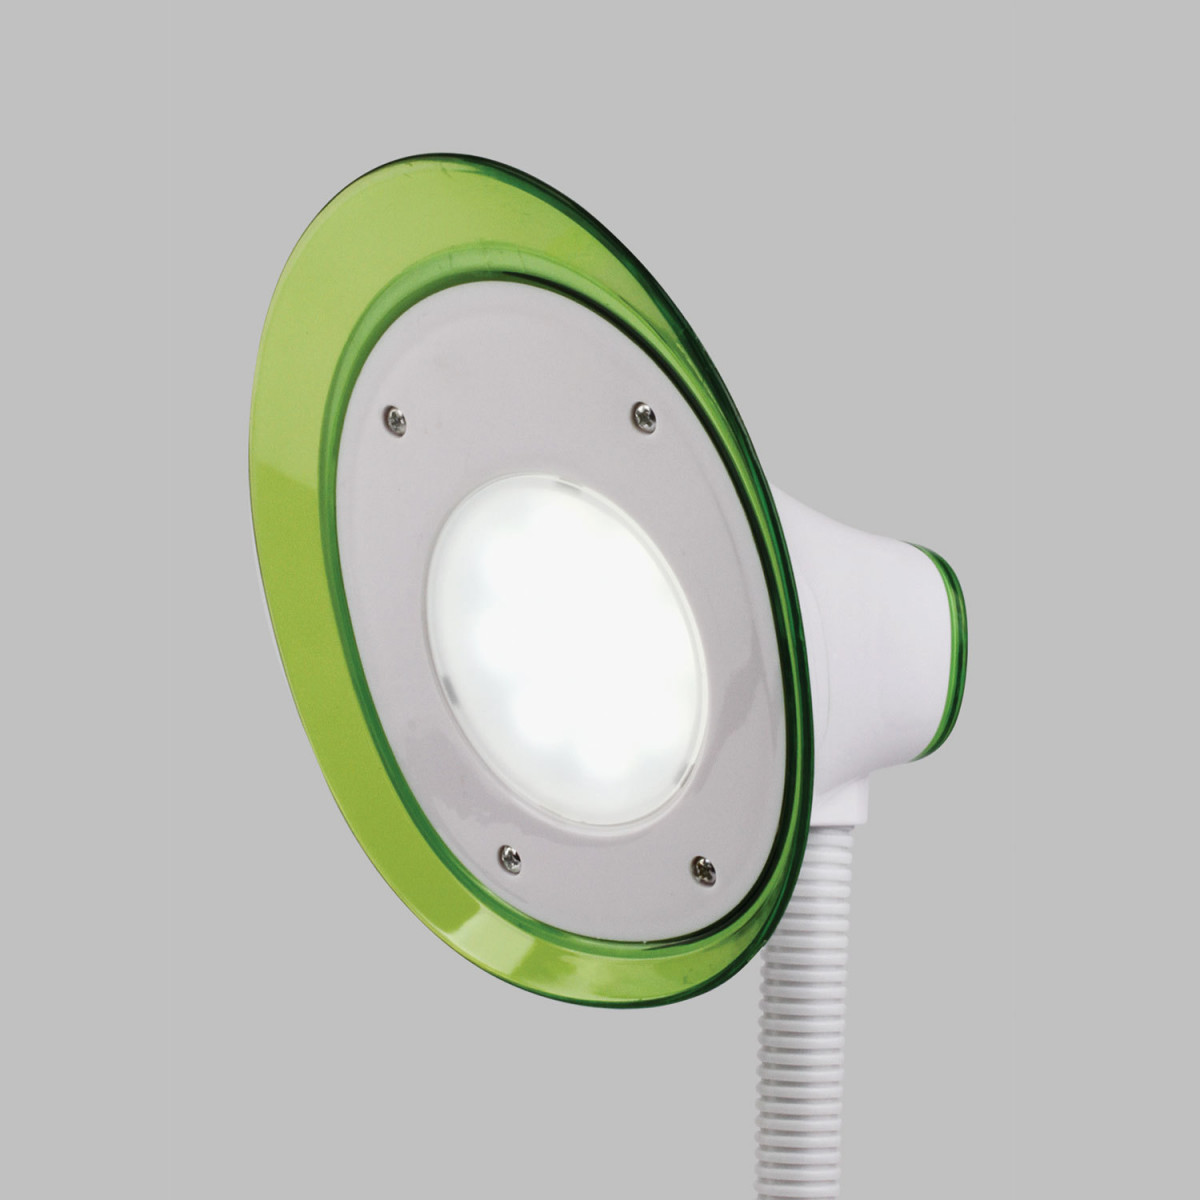 Светильник настольный SONNEN OU-608, на подставке, светодиодный, 5 Вт, белый/зеленый, 236670 (арт. 236670)